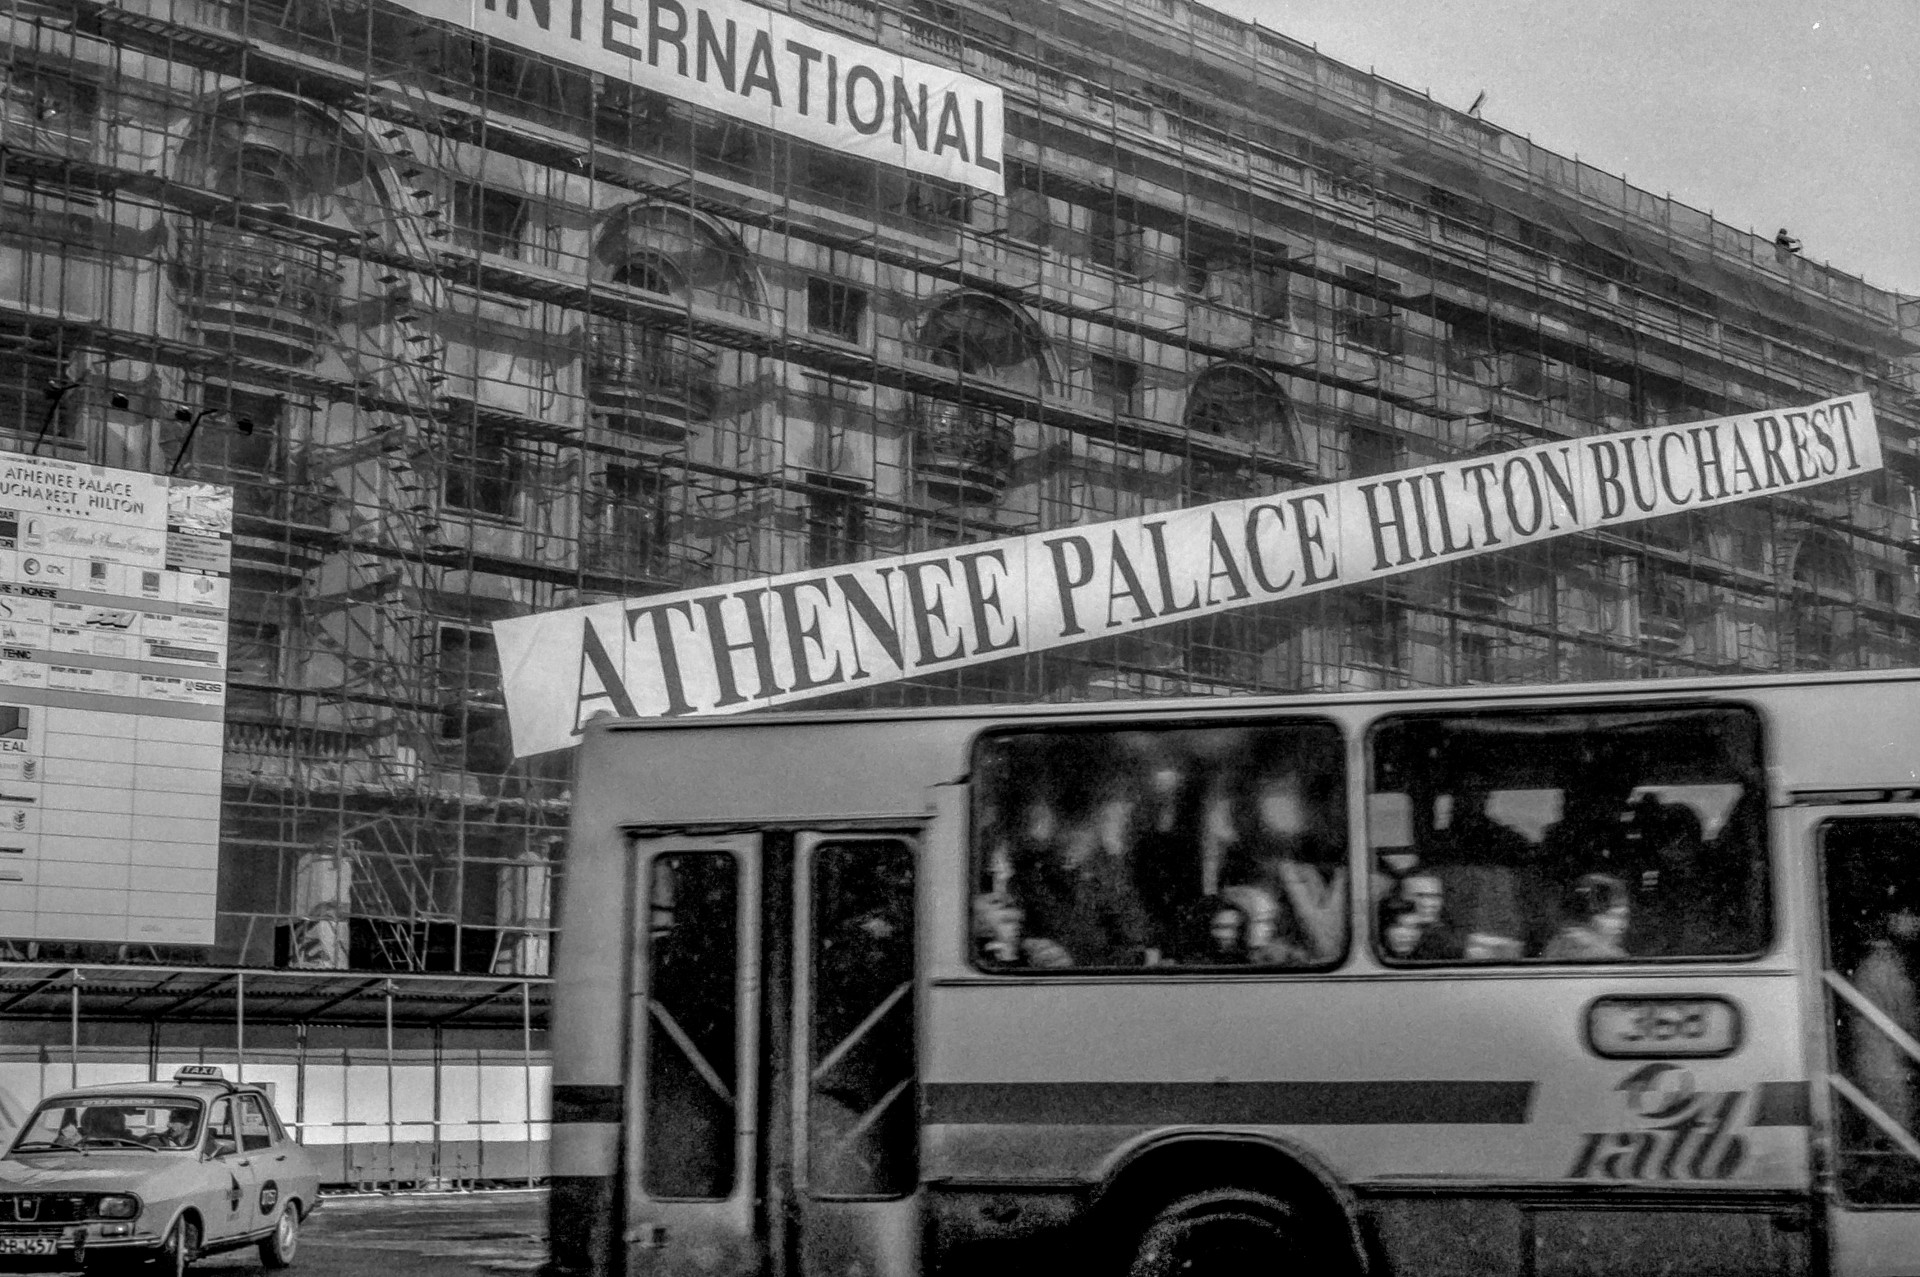 Hotel Athenee Palace Hilton - Calea Victoriei